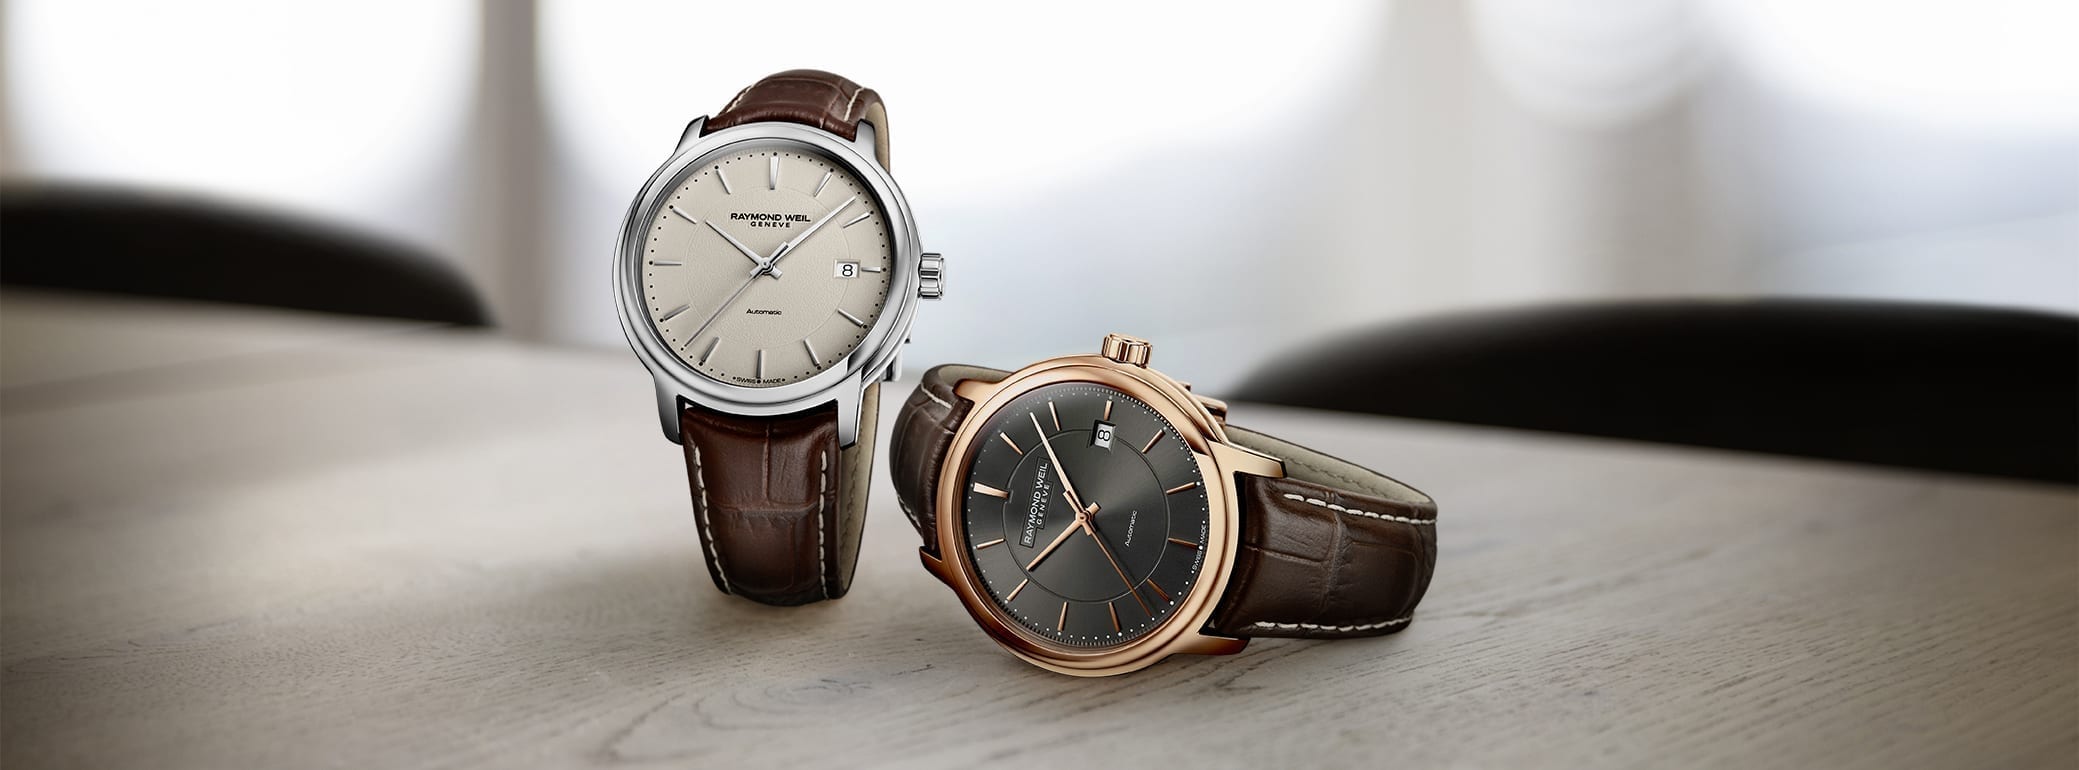 RAYMOND WEIL Maestro Luxury Swiss Watch